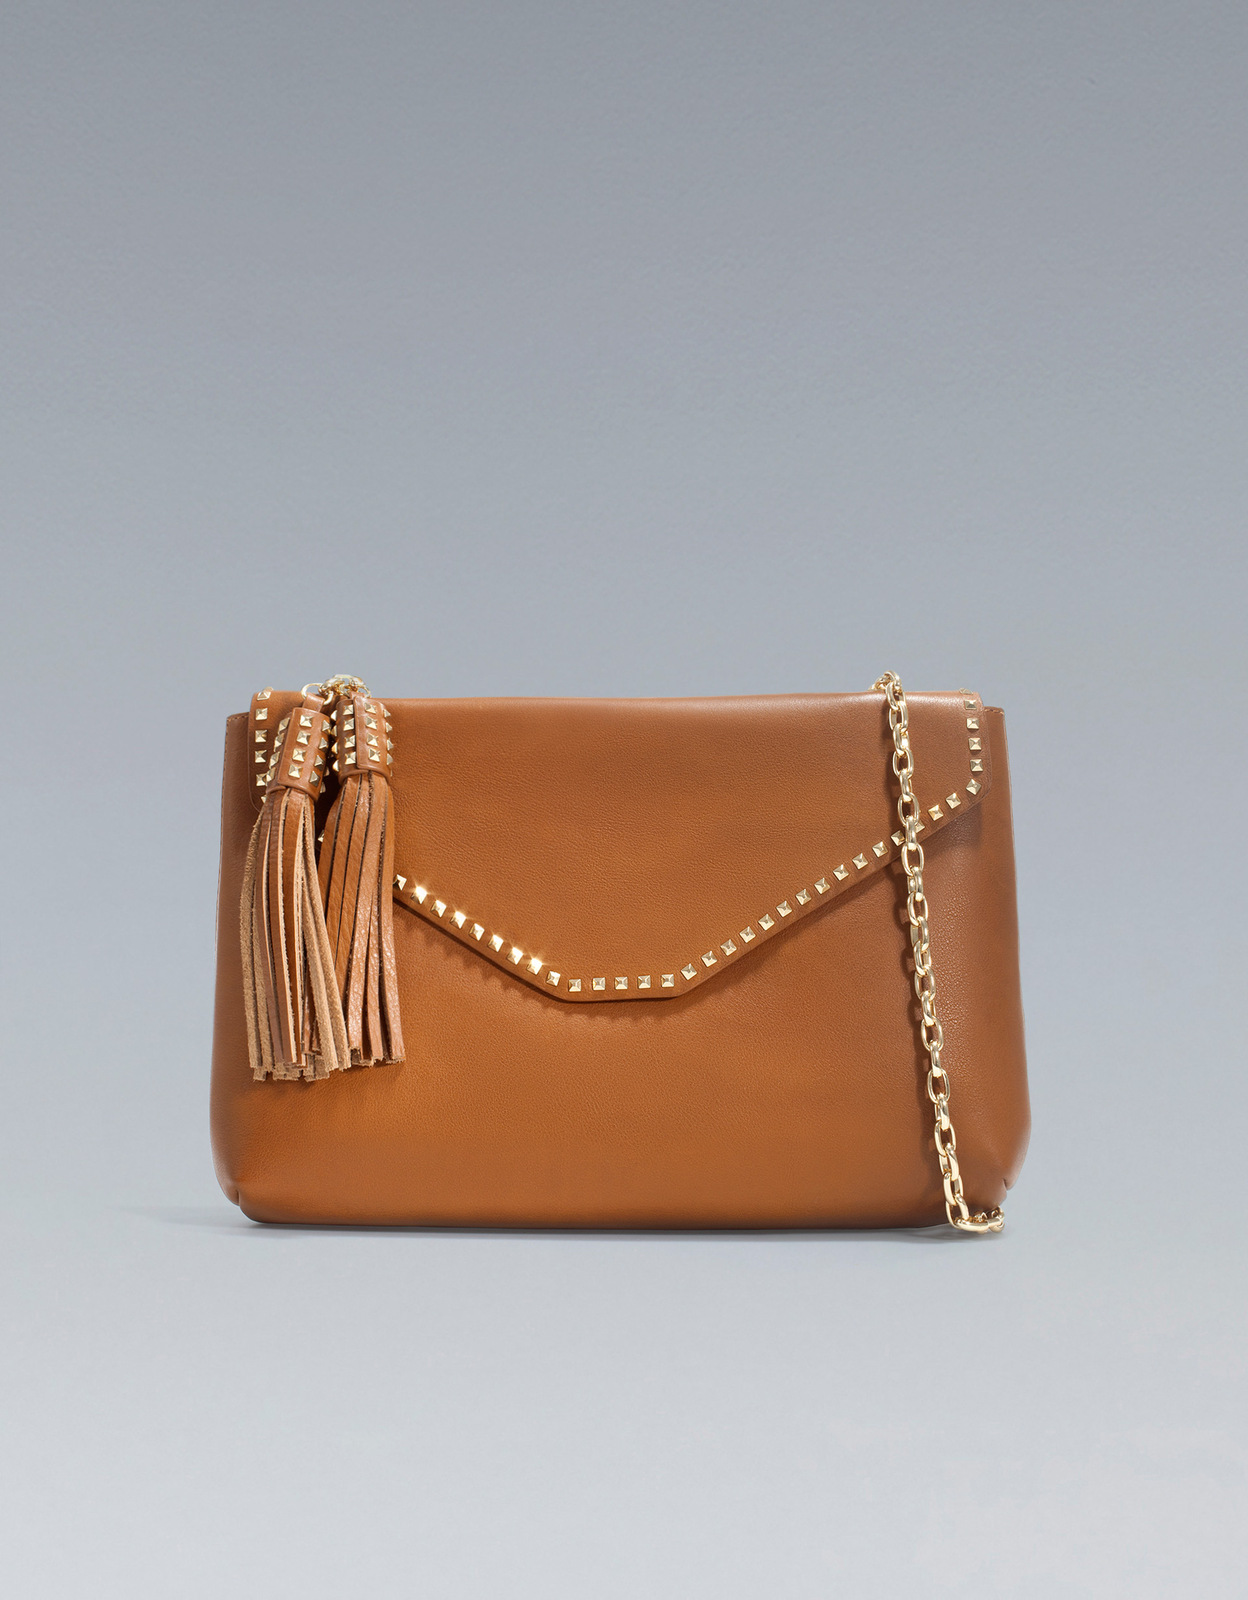 Zara láncos szegecses táska fotója